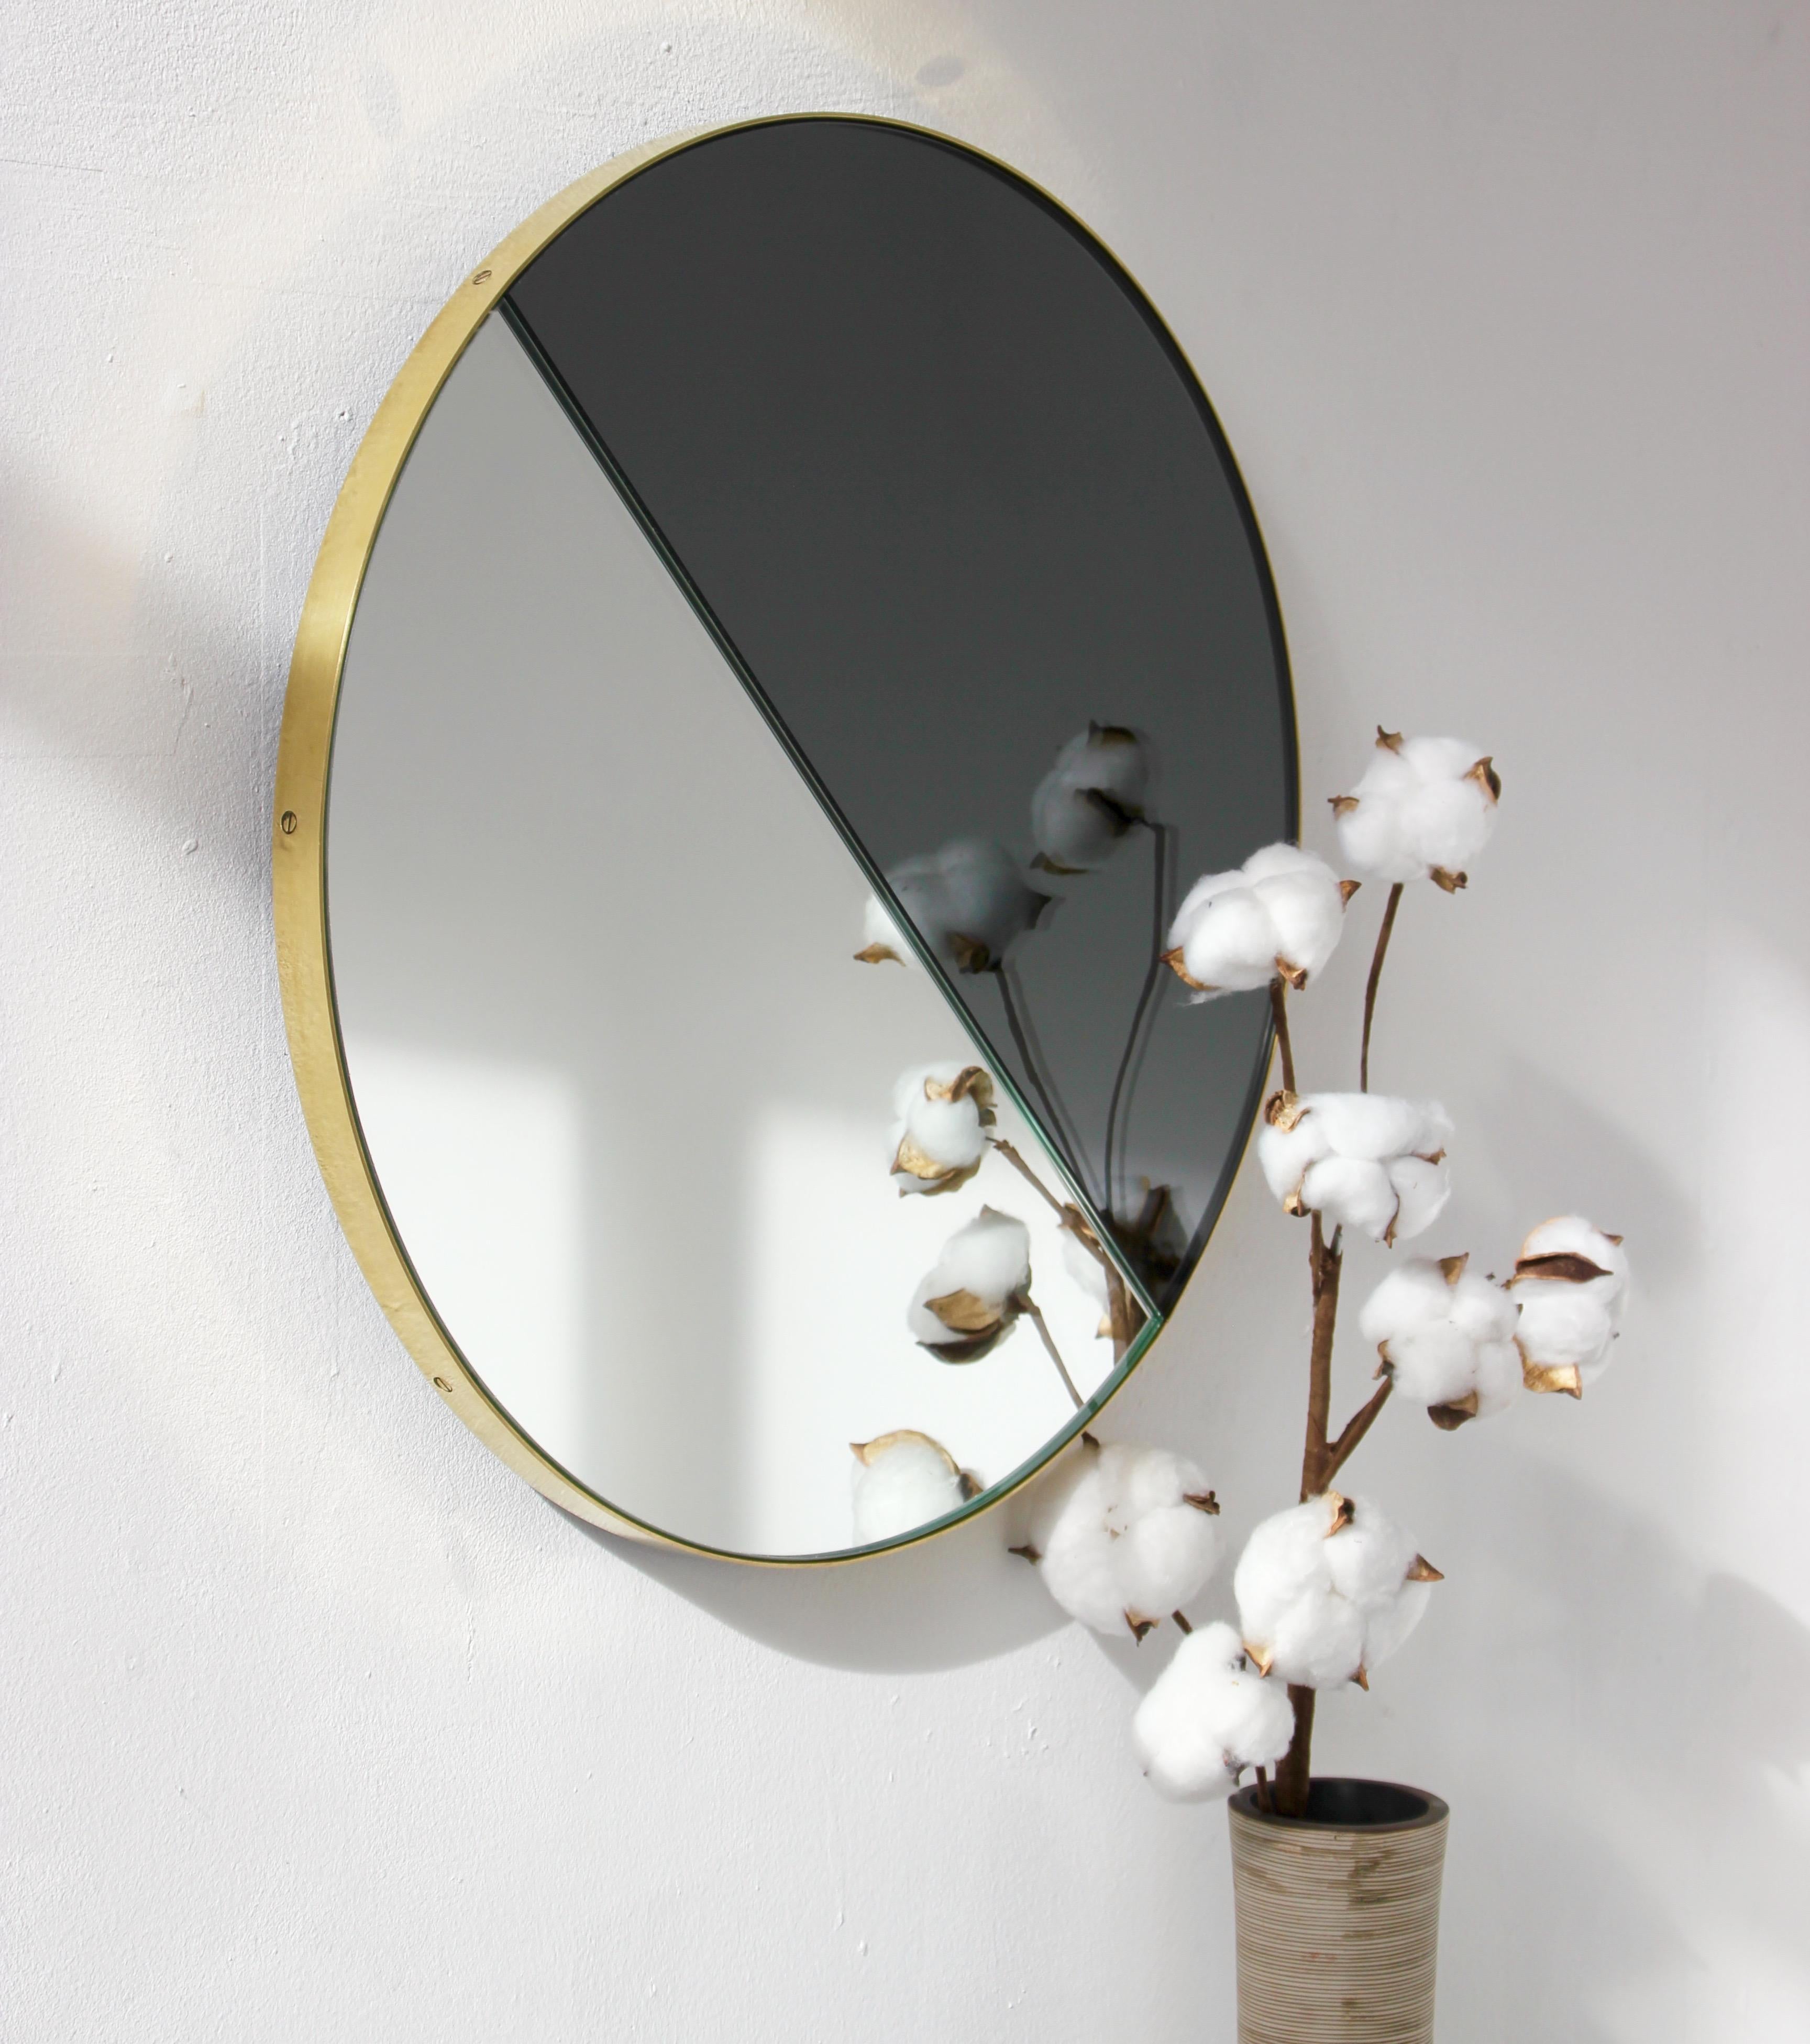 Miroir contemporain mixte noir et argenté teinté Dualis Orbis avec un cadre en laiton brossé. Conçu et fabriqué à la main à Londres, au Royaume-Uni.

Tous les miroirs sont équipés d'un ingénieux système de tasseaux à la française (lattes fendues)